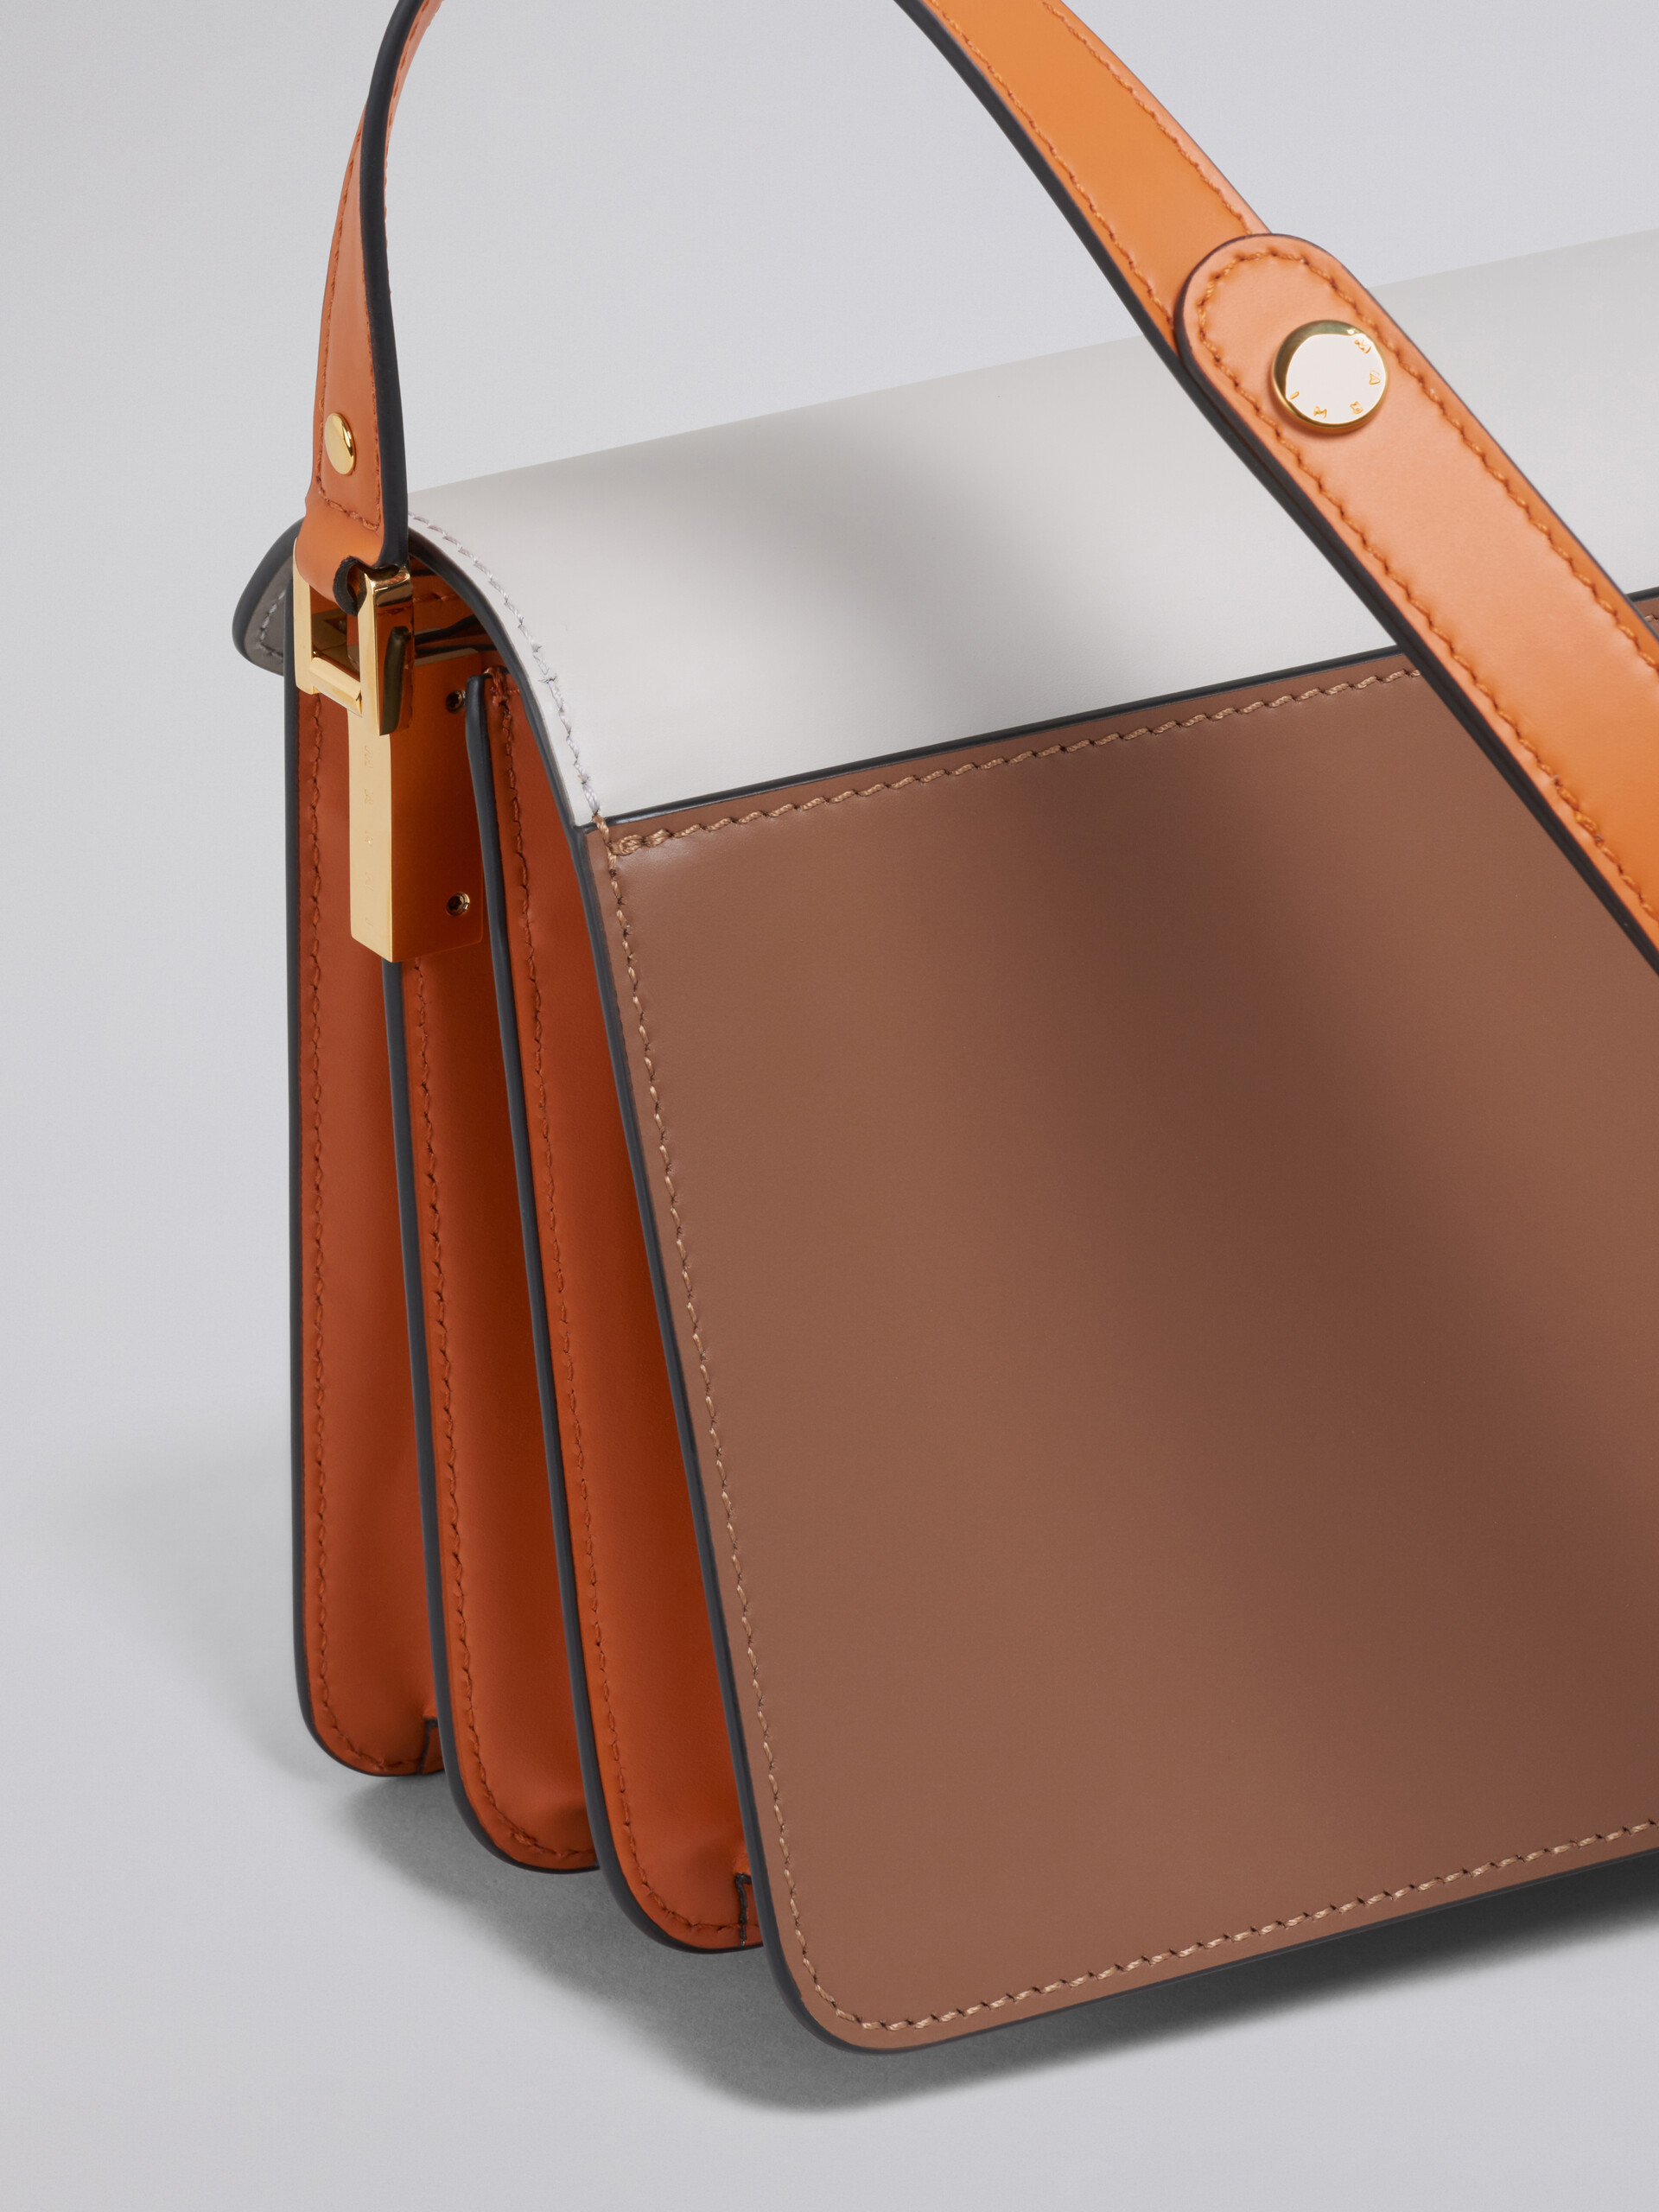 Marni Trunk - Shoulder bag for Woman - Brown - SBMP0121U0LV589